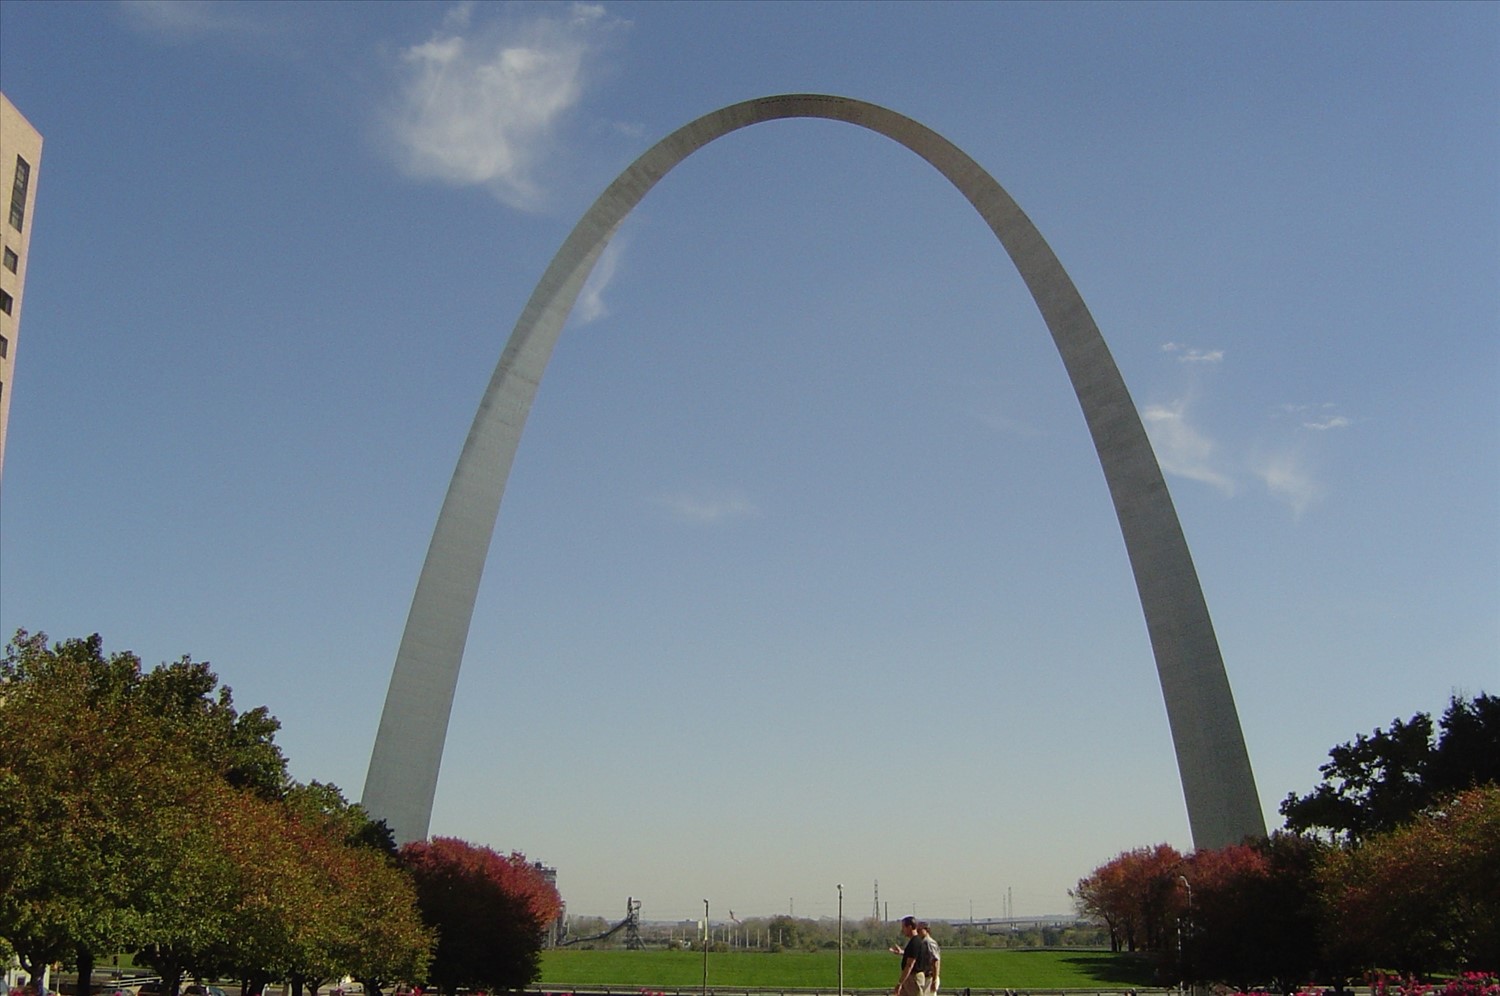 St. Louis Arch. DSC00223.jpg. Uploaded by Erik Hoffmann on 1/18/2004. 